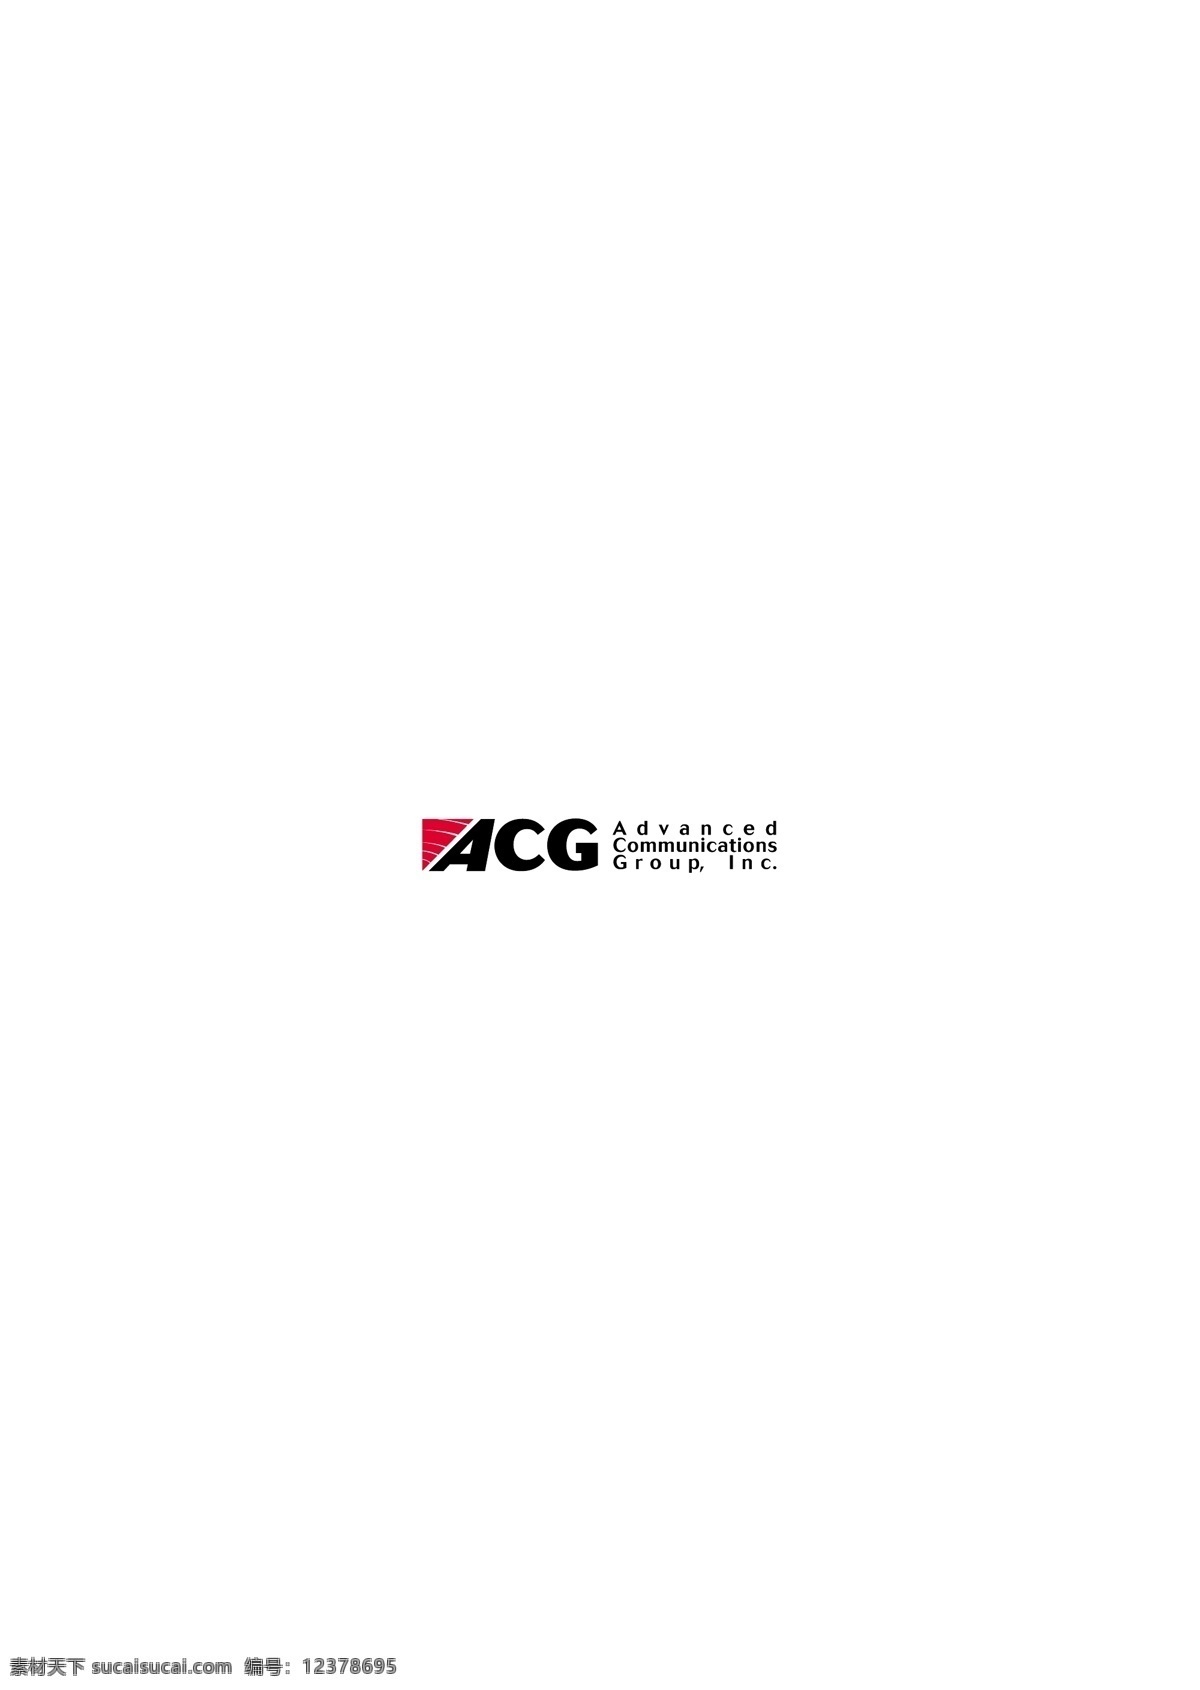 acg logo大全 logo 设计欣赏 商业矢量 矢量下载 通讯 公司 标志 标志设计 欣赏 网页矢量 矢量图 其他矢量图